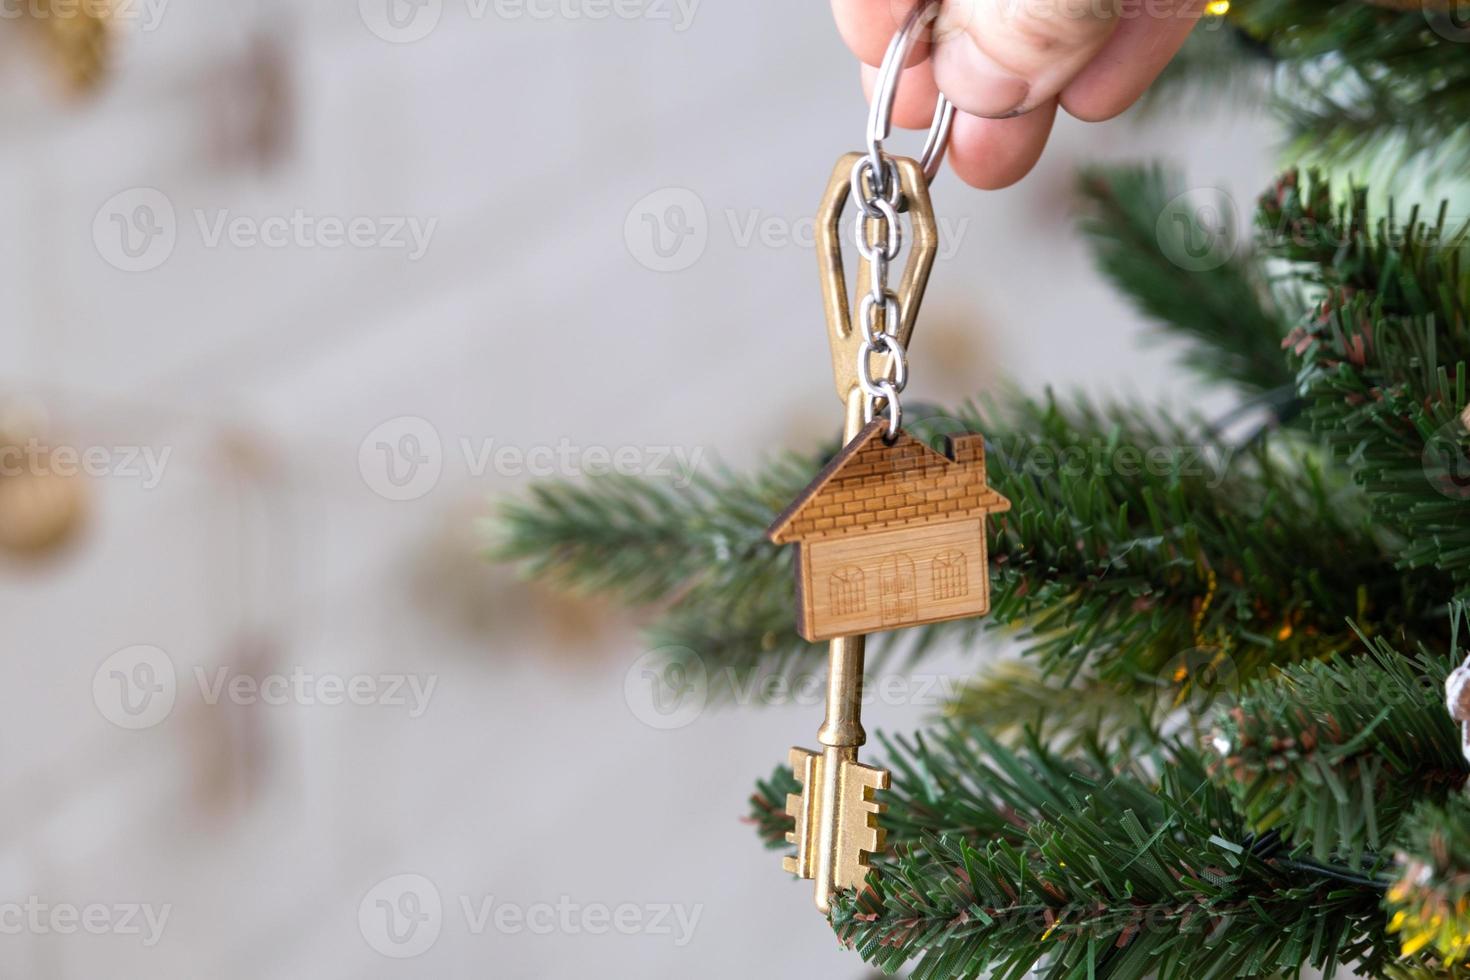 la chiave della casa con un portachiavi è appesa all'albero di Natale. un regalo per capodanno, natale. costruzione, progettazione, progetto, trasloco in nuova casa, mutuo, affitto e acquisto di immobili. copia spazio foto